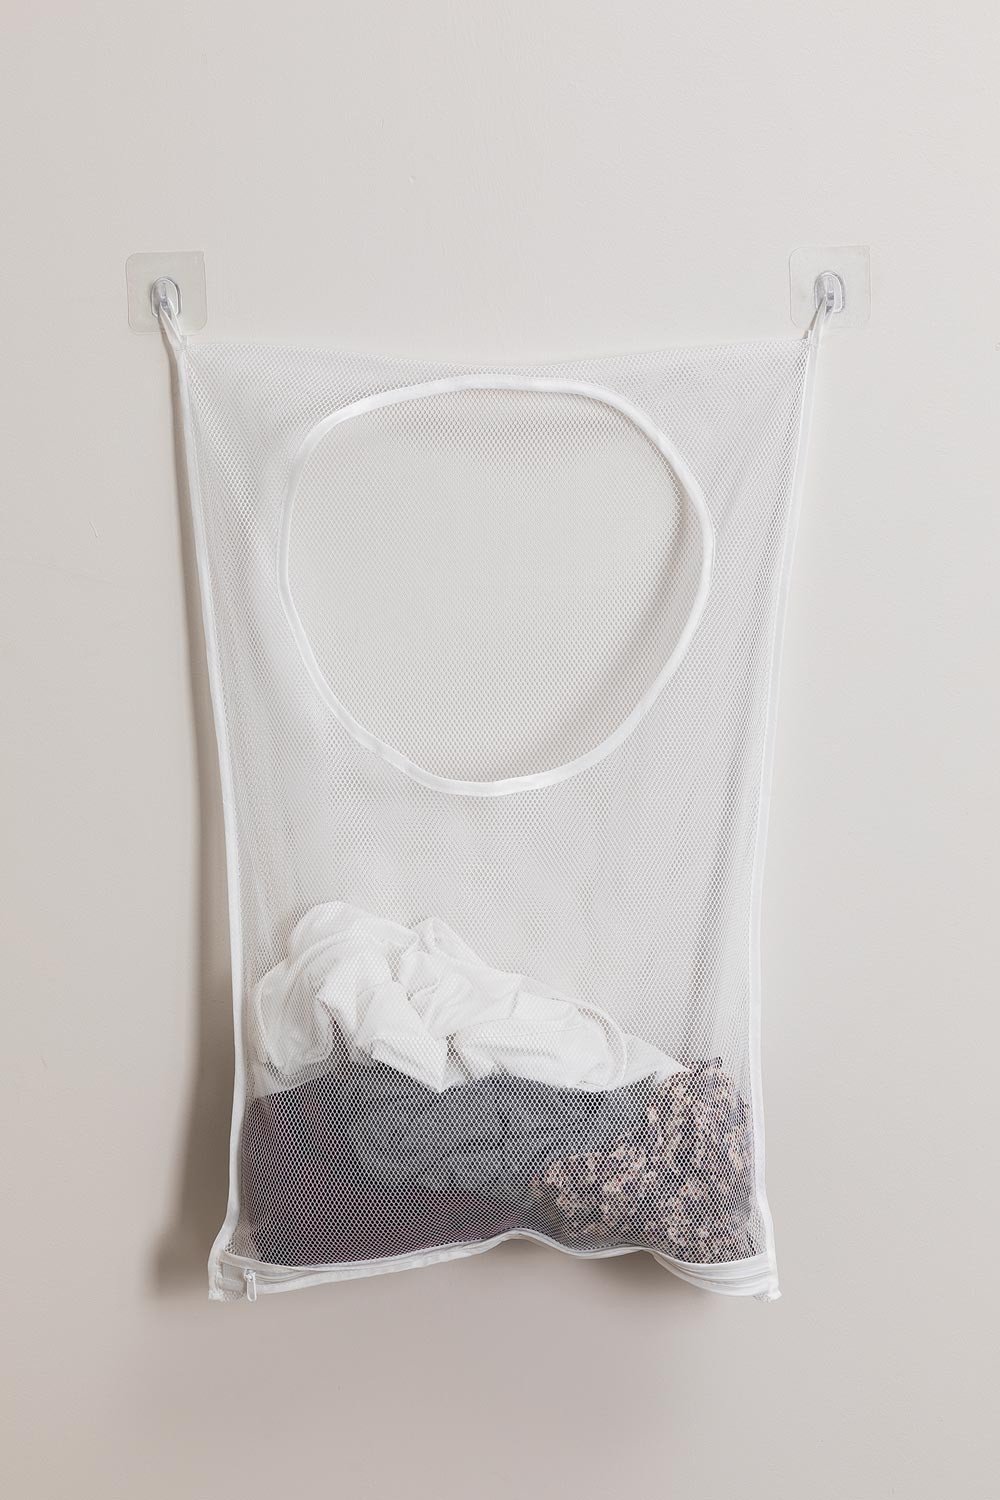 Cesto de la ropa sucia pecho de mimbre blanco tapa rectangular WxDxH  48x36x62cm -  España